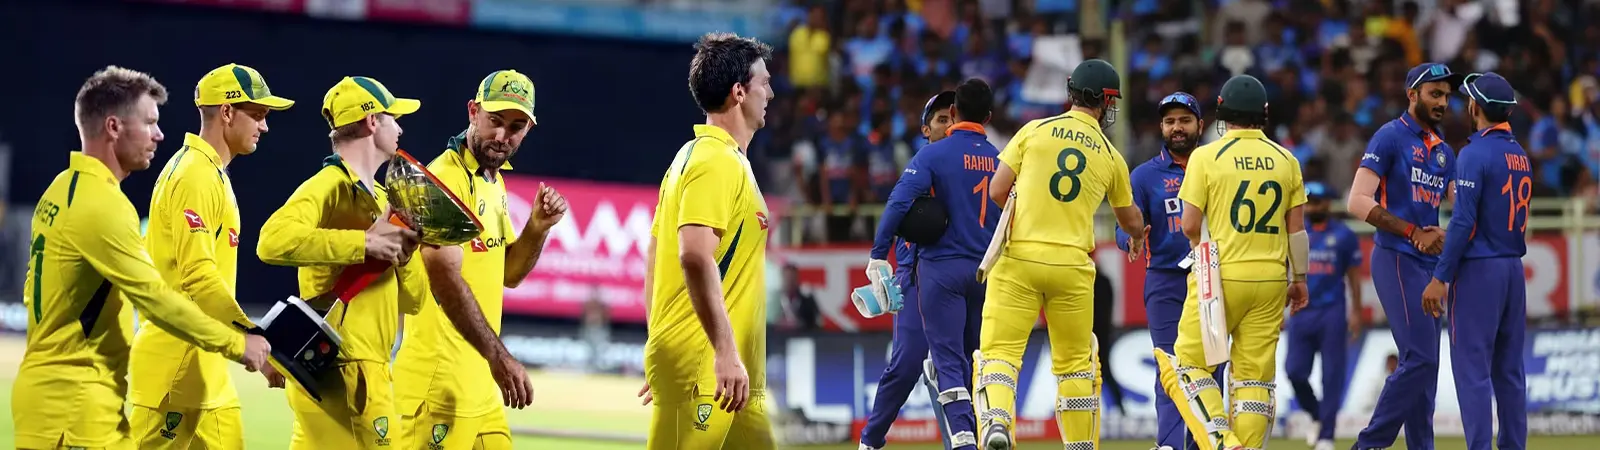 India vs Australia ODI Series Update : भारतीय टीम में 8 महीने बाद वापिस आया यह दमदार खिलाड़ी, ऑस्ट्रेलिया टीम के छुड़ाएगा छक्के!!!